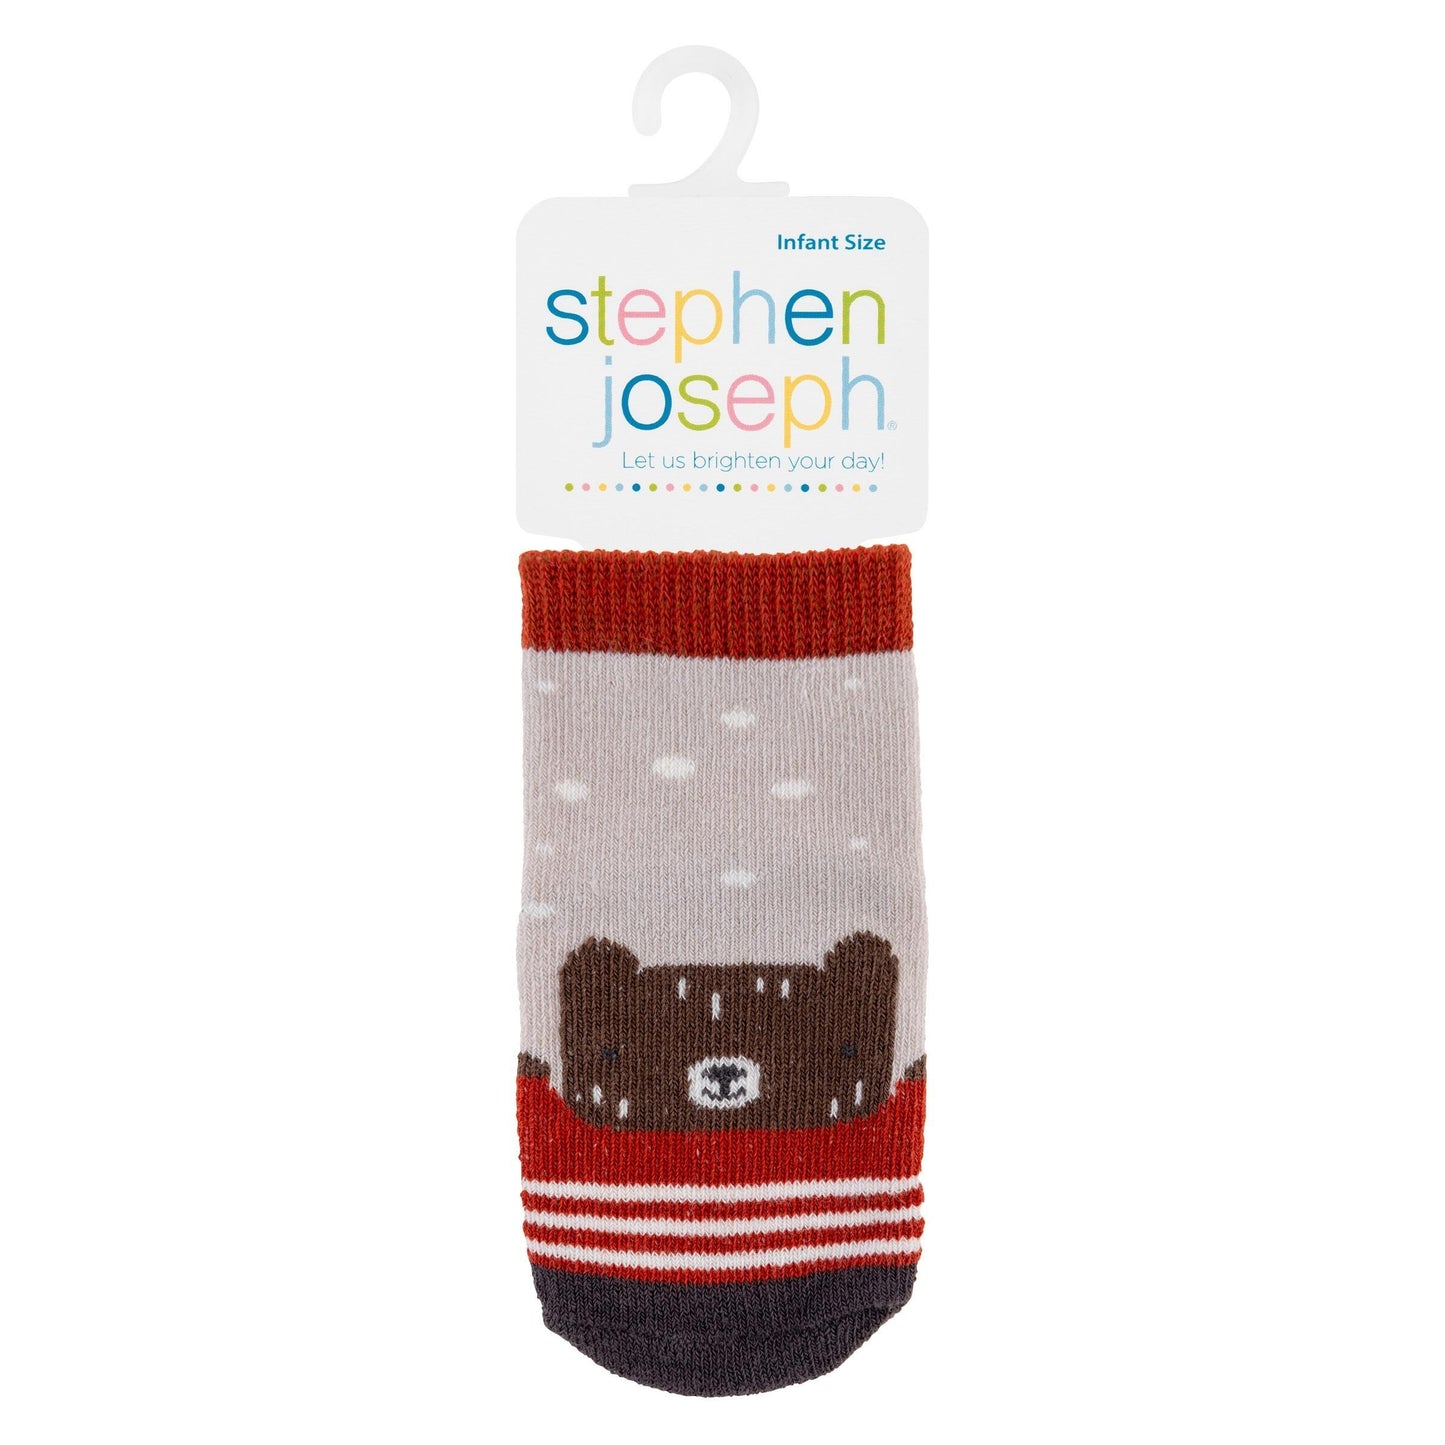 Stephen Joseph Baby Socks 3 Pack